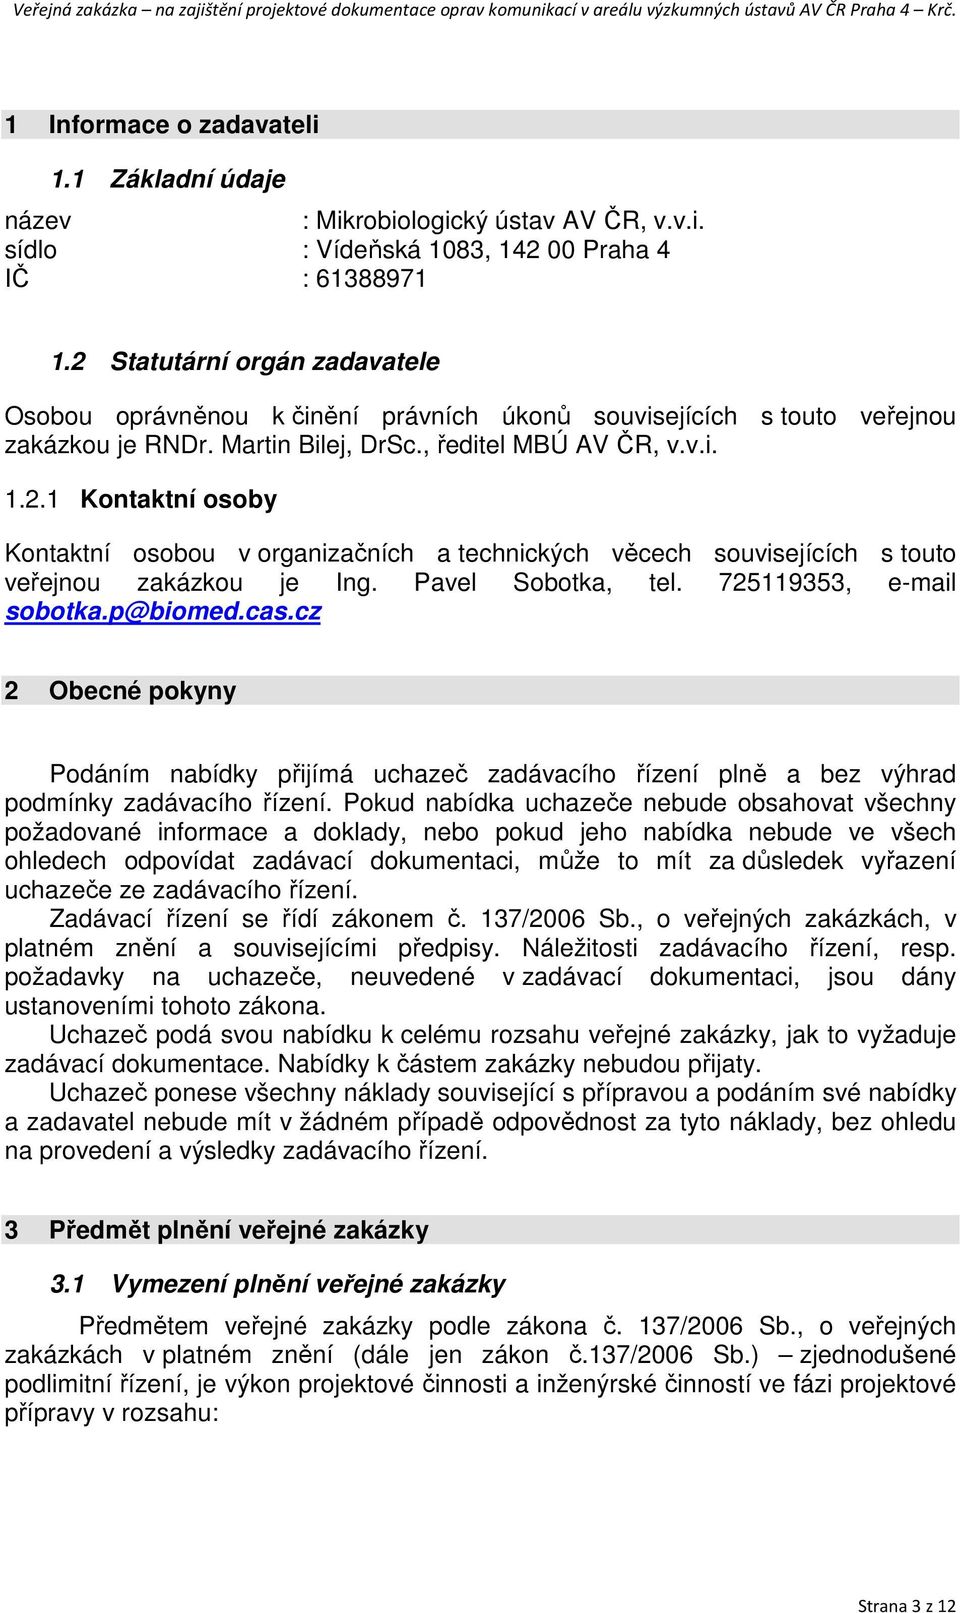 Pavel Sobotka, tel. 725119353, e-mail sobotka.p@biomed.cas.cz 2 Obecné pokyny Podáním nabídky přijímá uchazeč zadávacího řízení plně a bez výhrad podmínky zadávacího řízení.